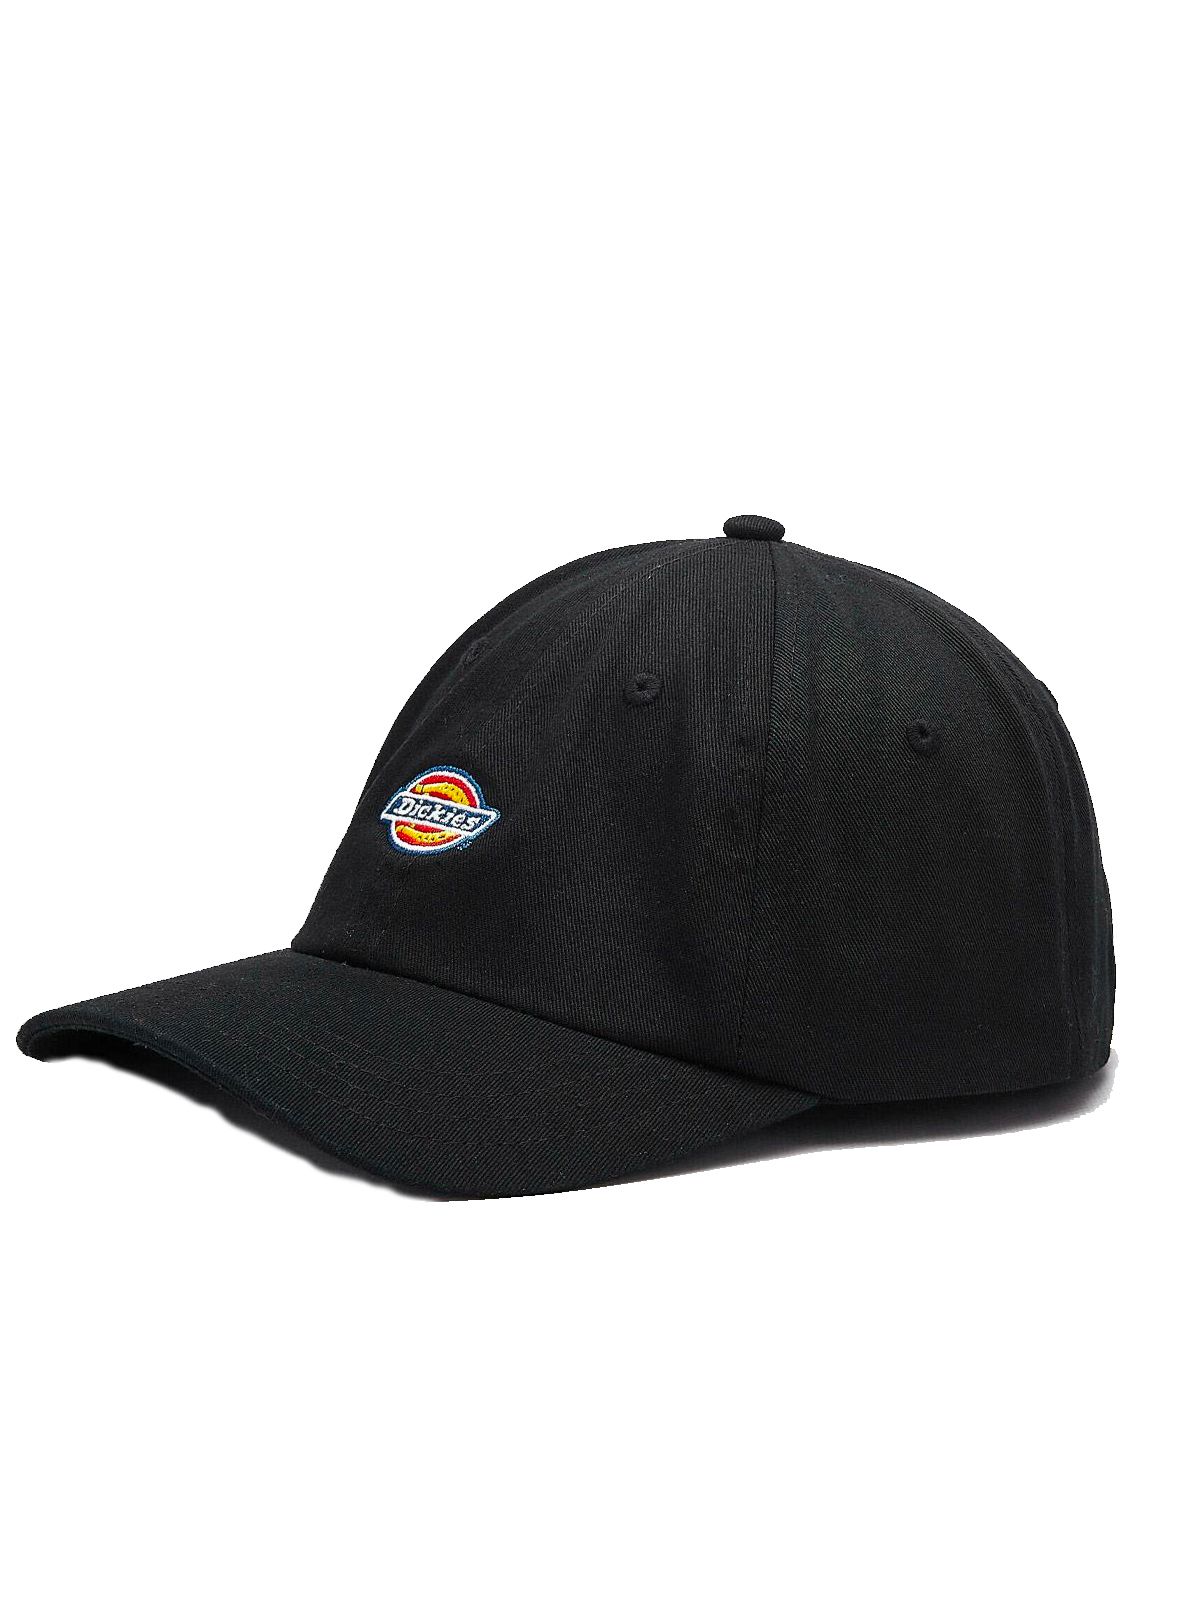 Dickies Men's Hat: Hardwick Baseball Cap